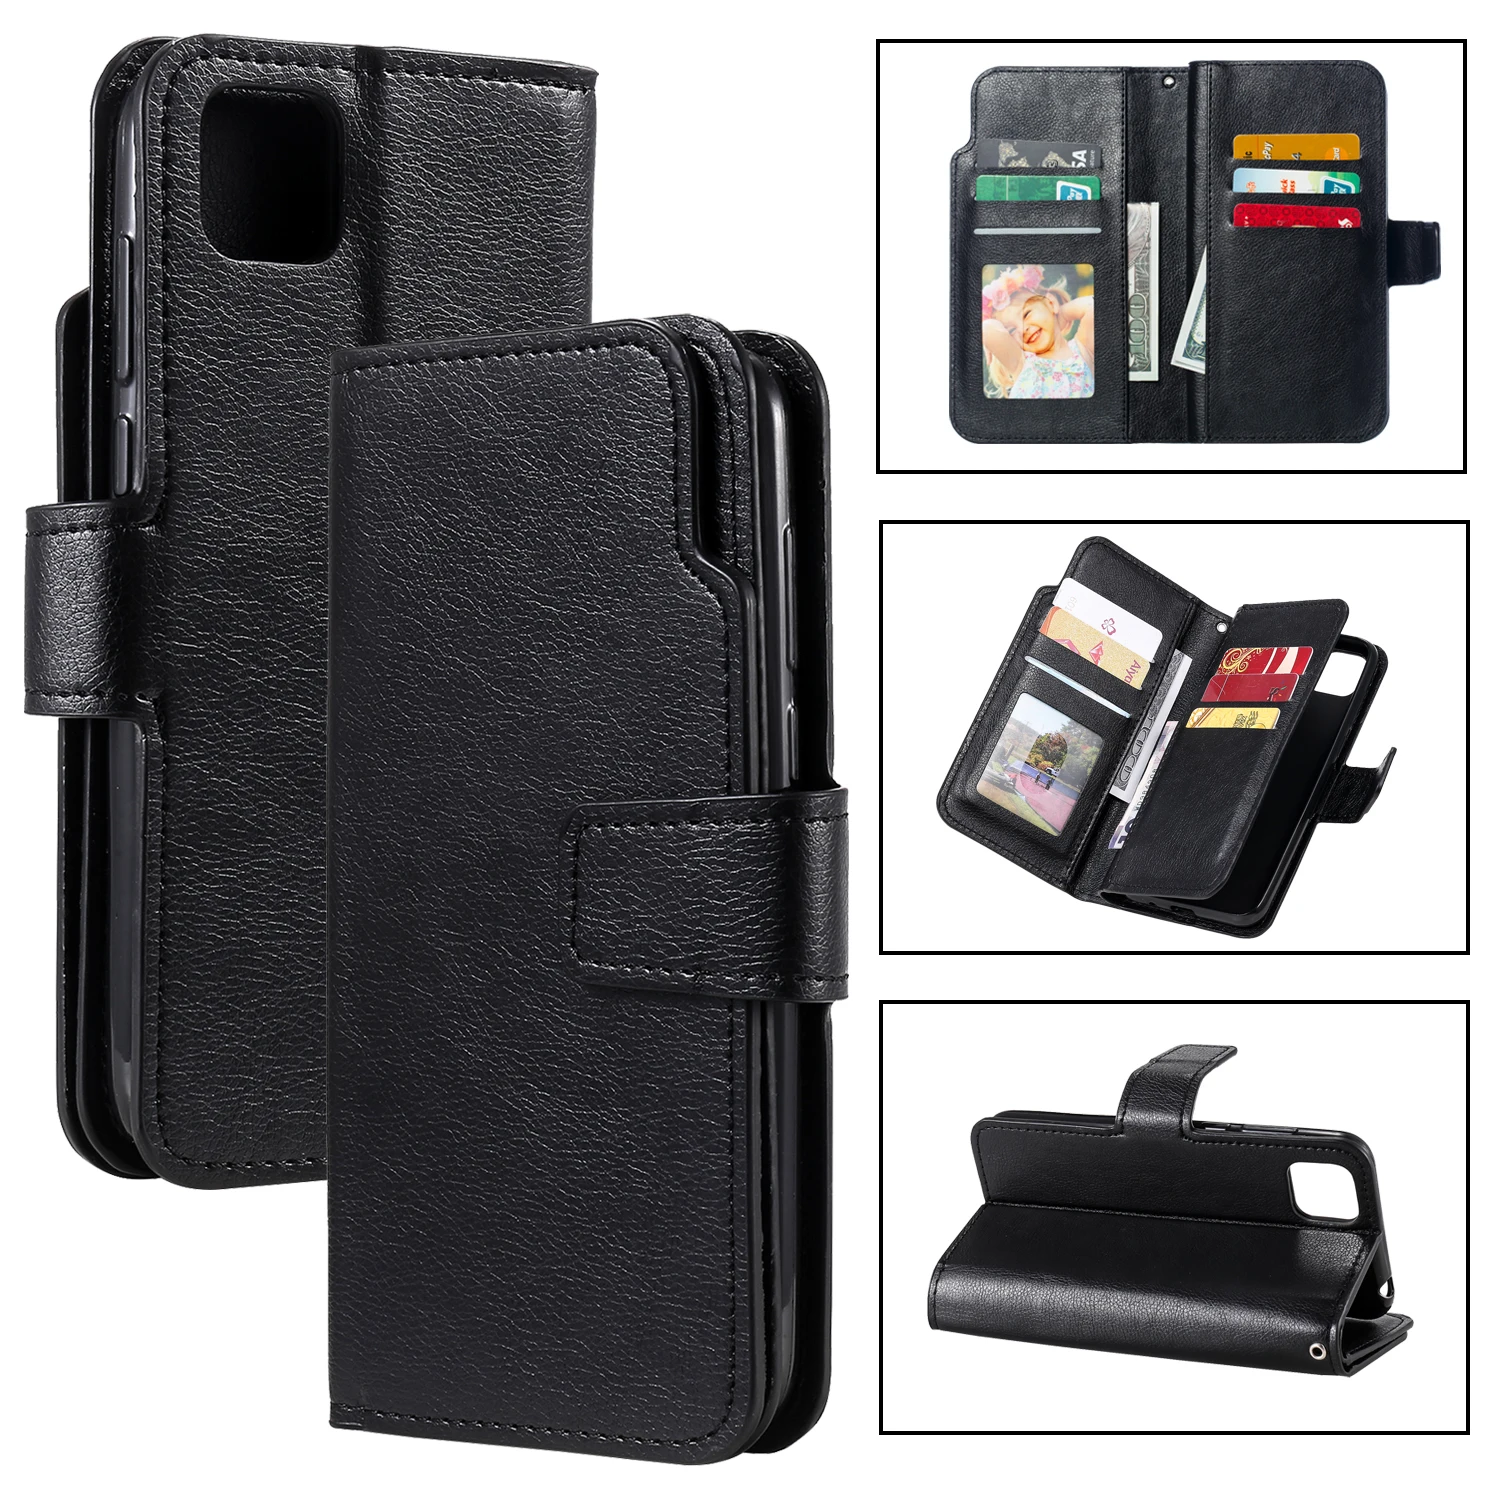 Leather Case For Samsung Galaxy J2 J3 J4 J5 J6 J7 J8 3 A5 A6 A7 A8 2016 2017 Plus Pro 2018 Wallet Flip Card Slot Cover Phone Bag images - 6